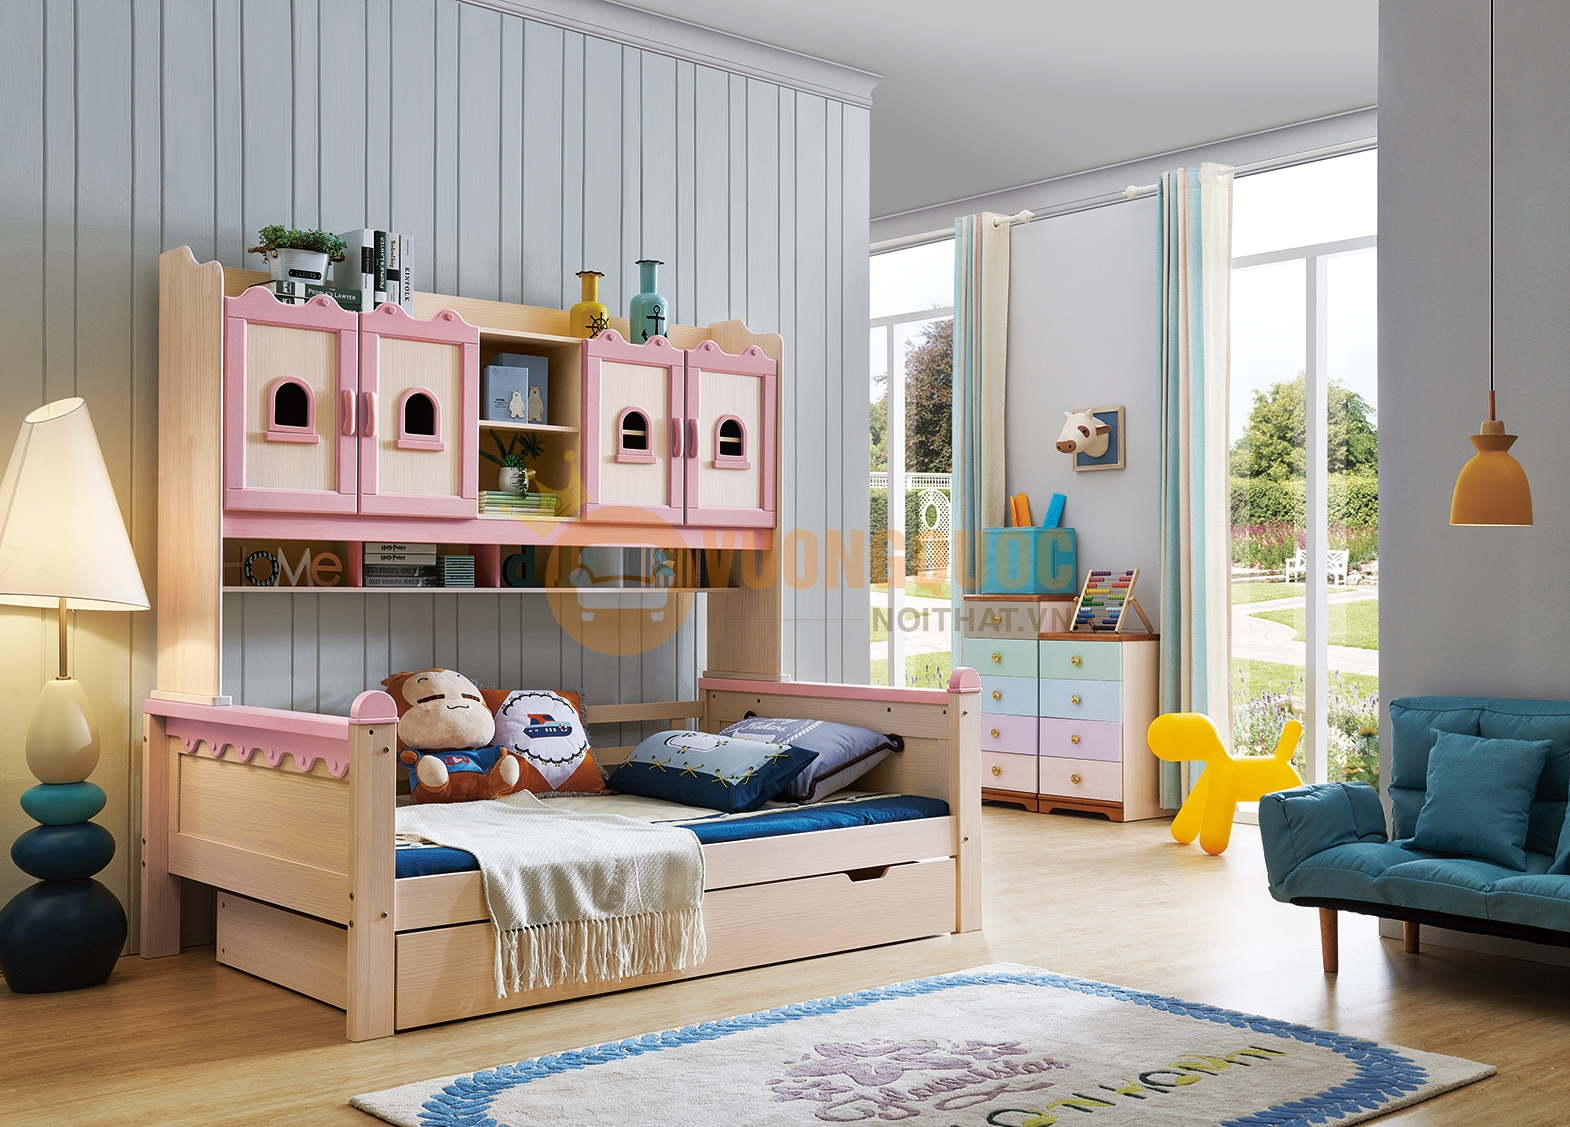 Giường ngủ cho bé kèm tủ trang trí tiện dụng JVNA922 màu hồng